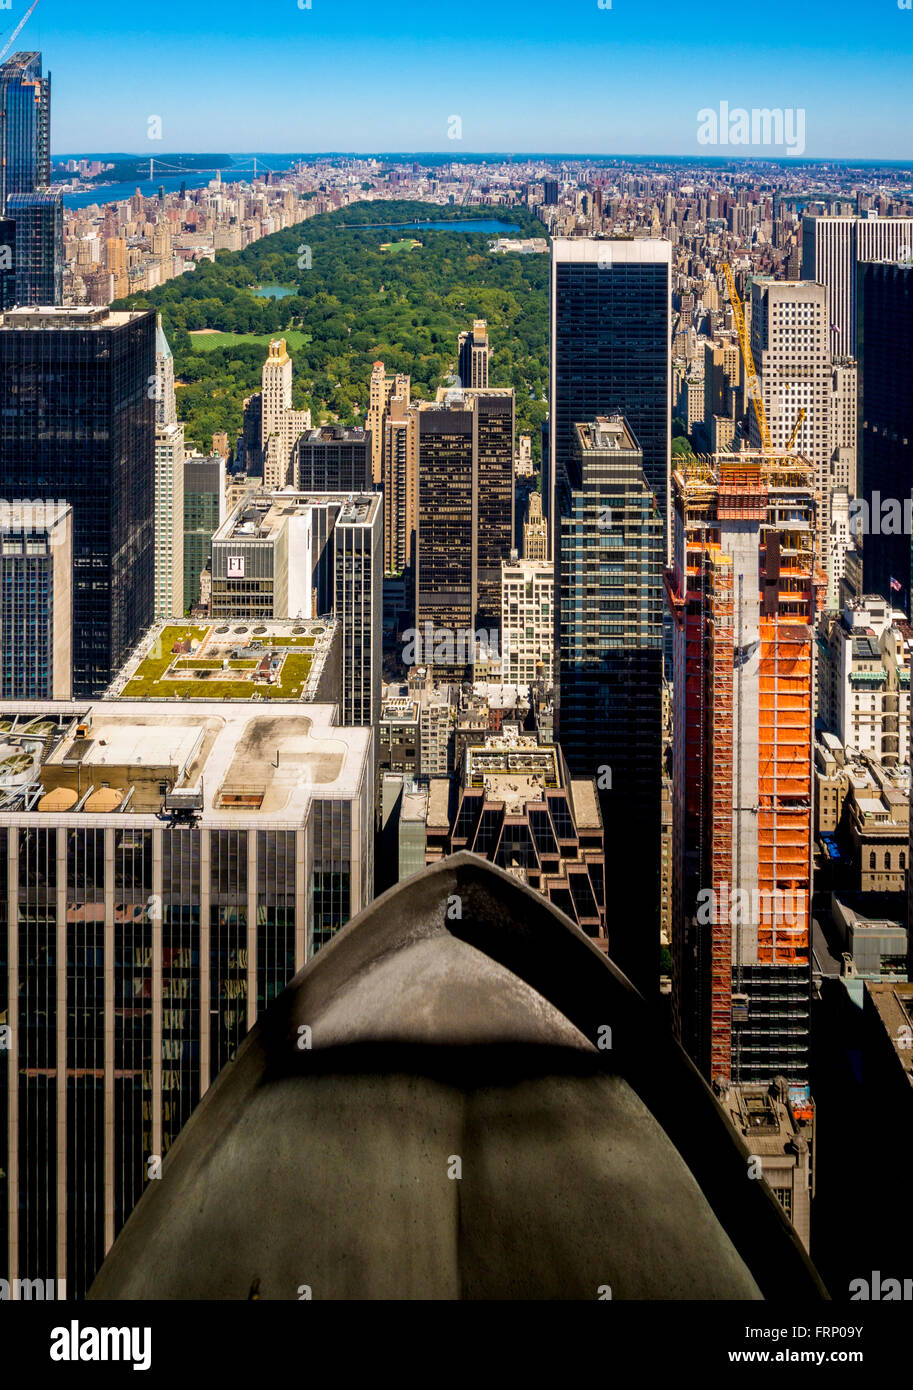 Il Central Park di New York City vista dal ponte di osservazione del Rockefeller Center di New York City, Stati Uniti d'America. Foto Stock